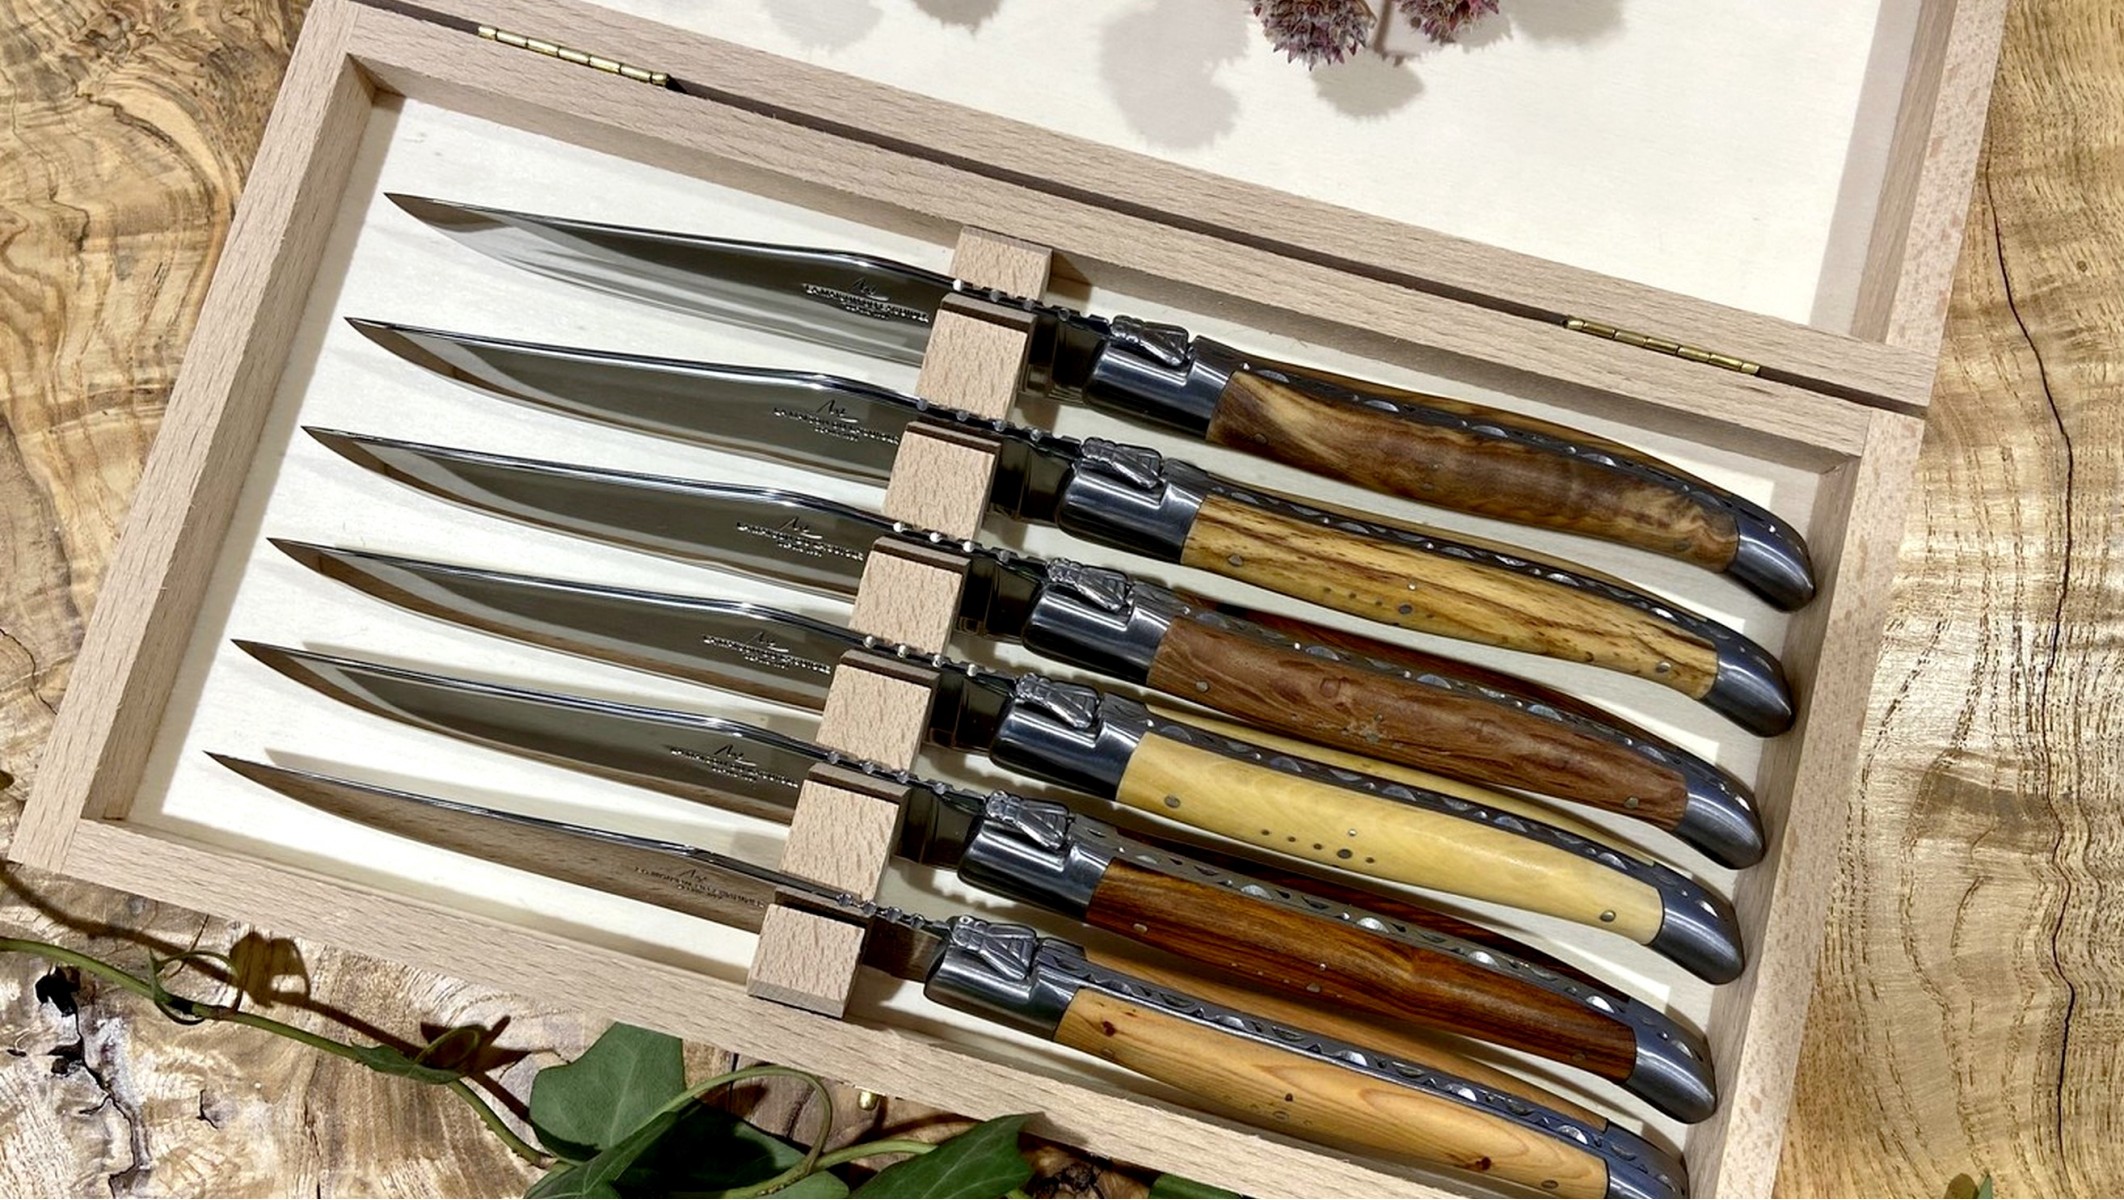 Coffret 6 couteaux de table - Bois précieux assortis, satiné - Laguiole -  Doyon Després